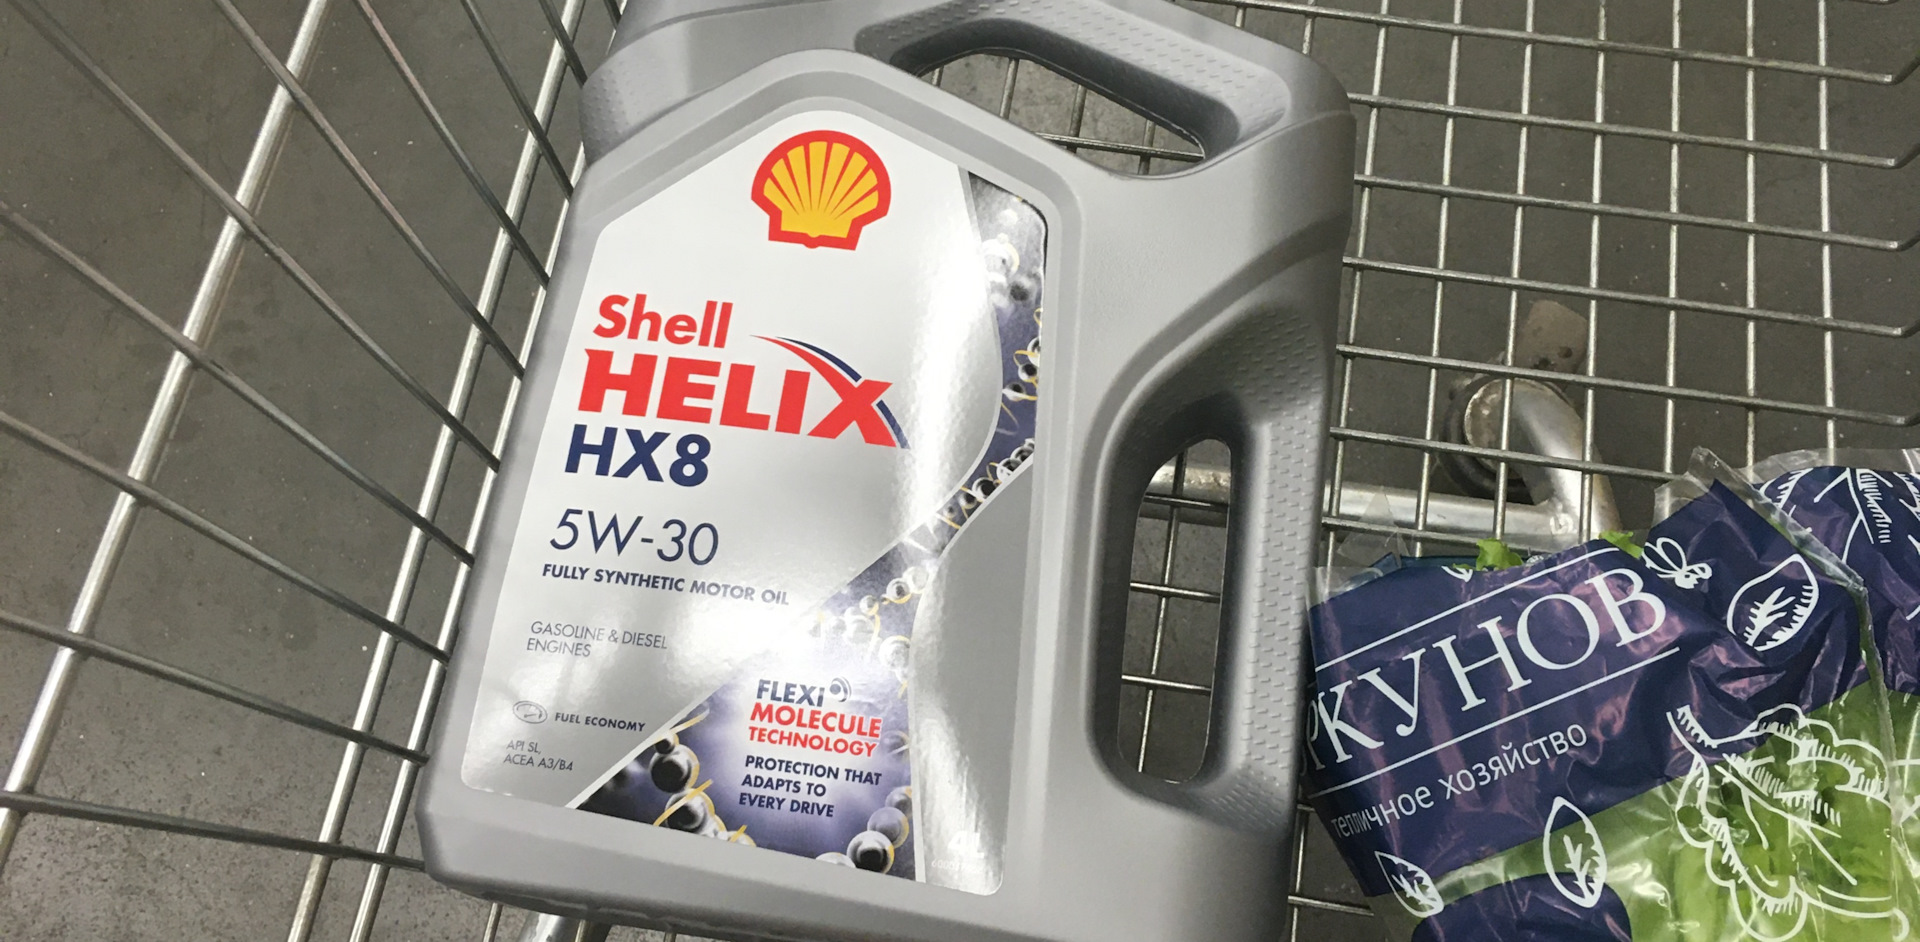 Производство масло Shell нx8. Шелл хеликс подлинность